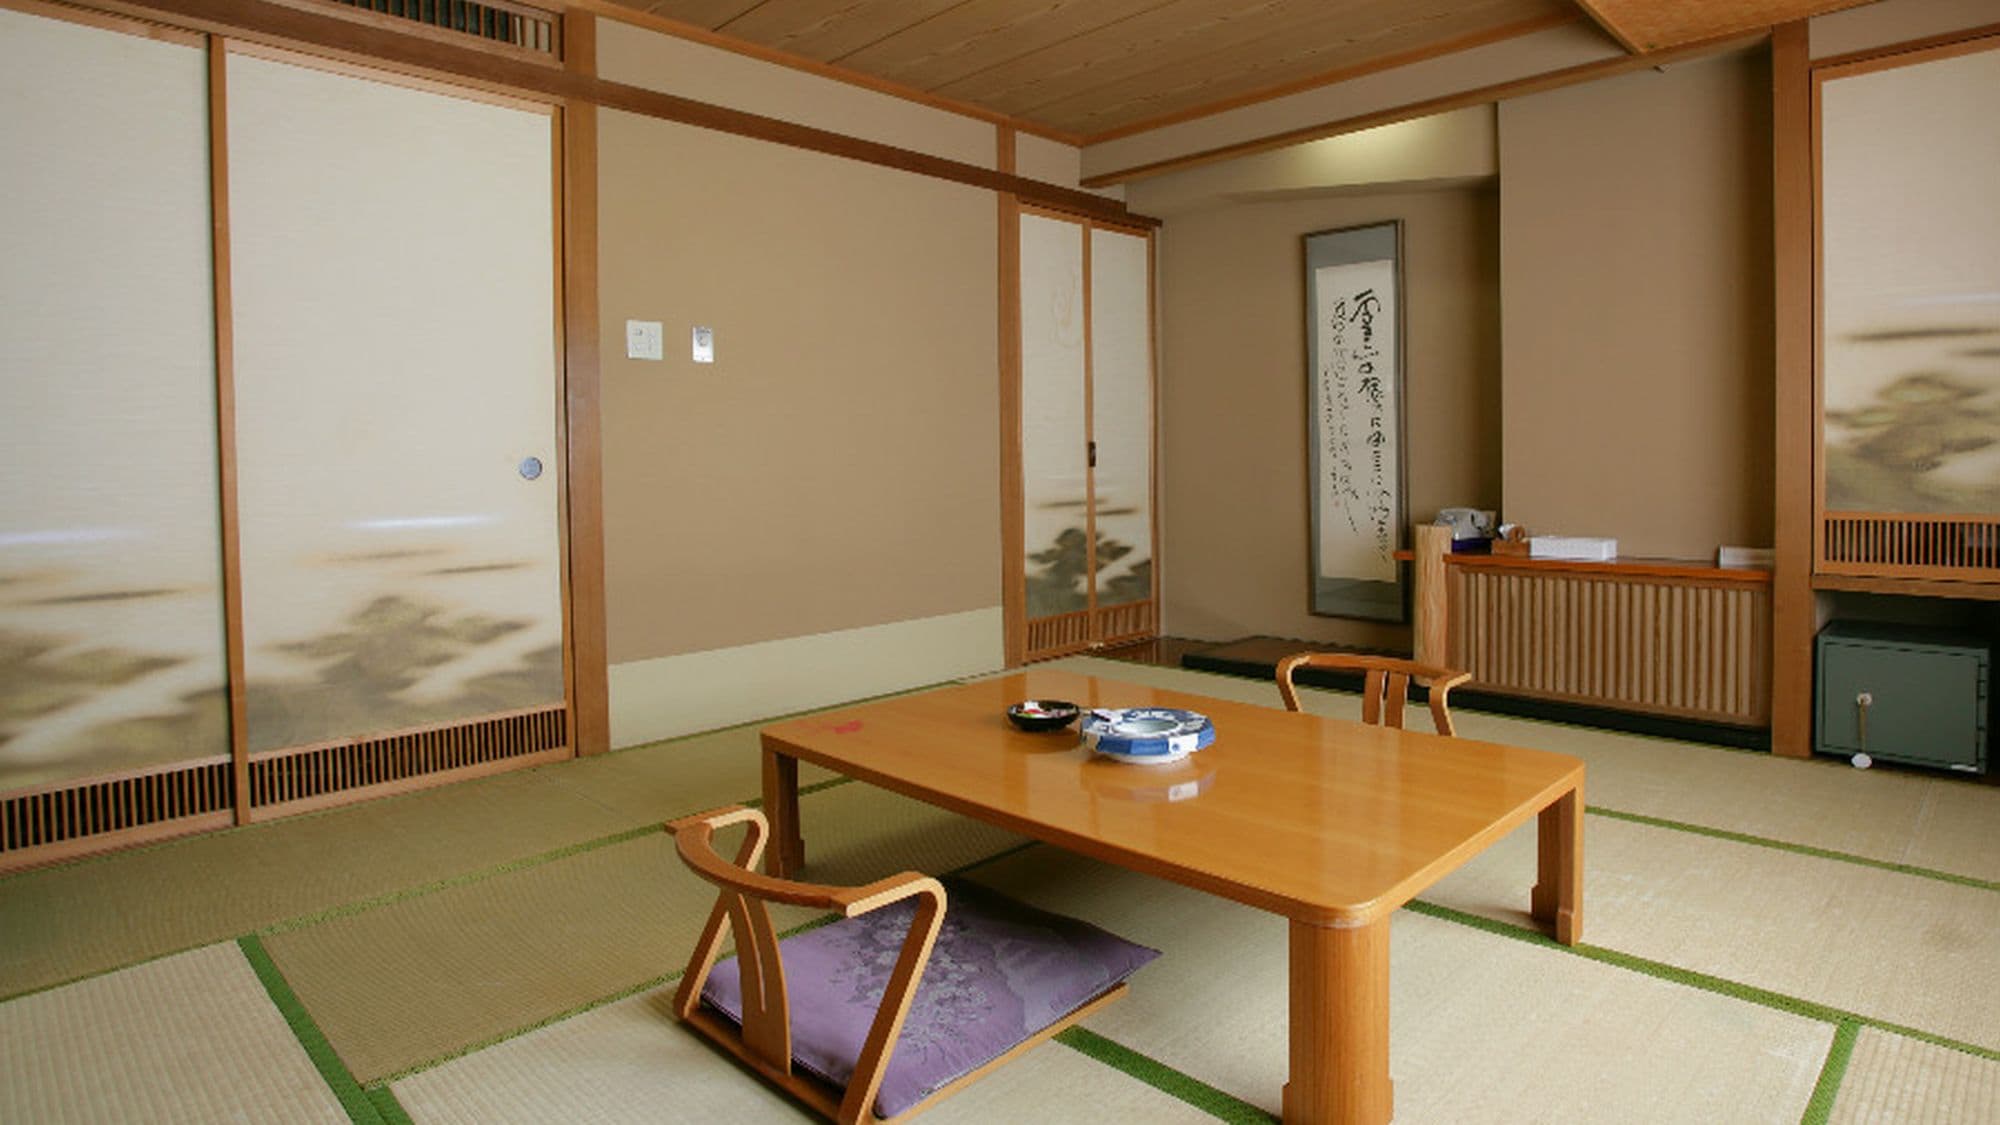 [ห้องสไตล์ญี่ปุ่น] ฉันชอบห้องสไตล์ญี่ปุ่นที่คุณสามารถนอนลงหลังอาบน้ำได้!